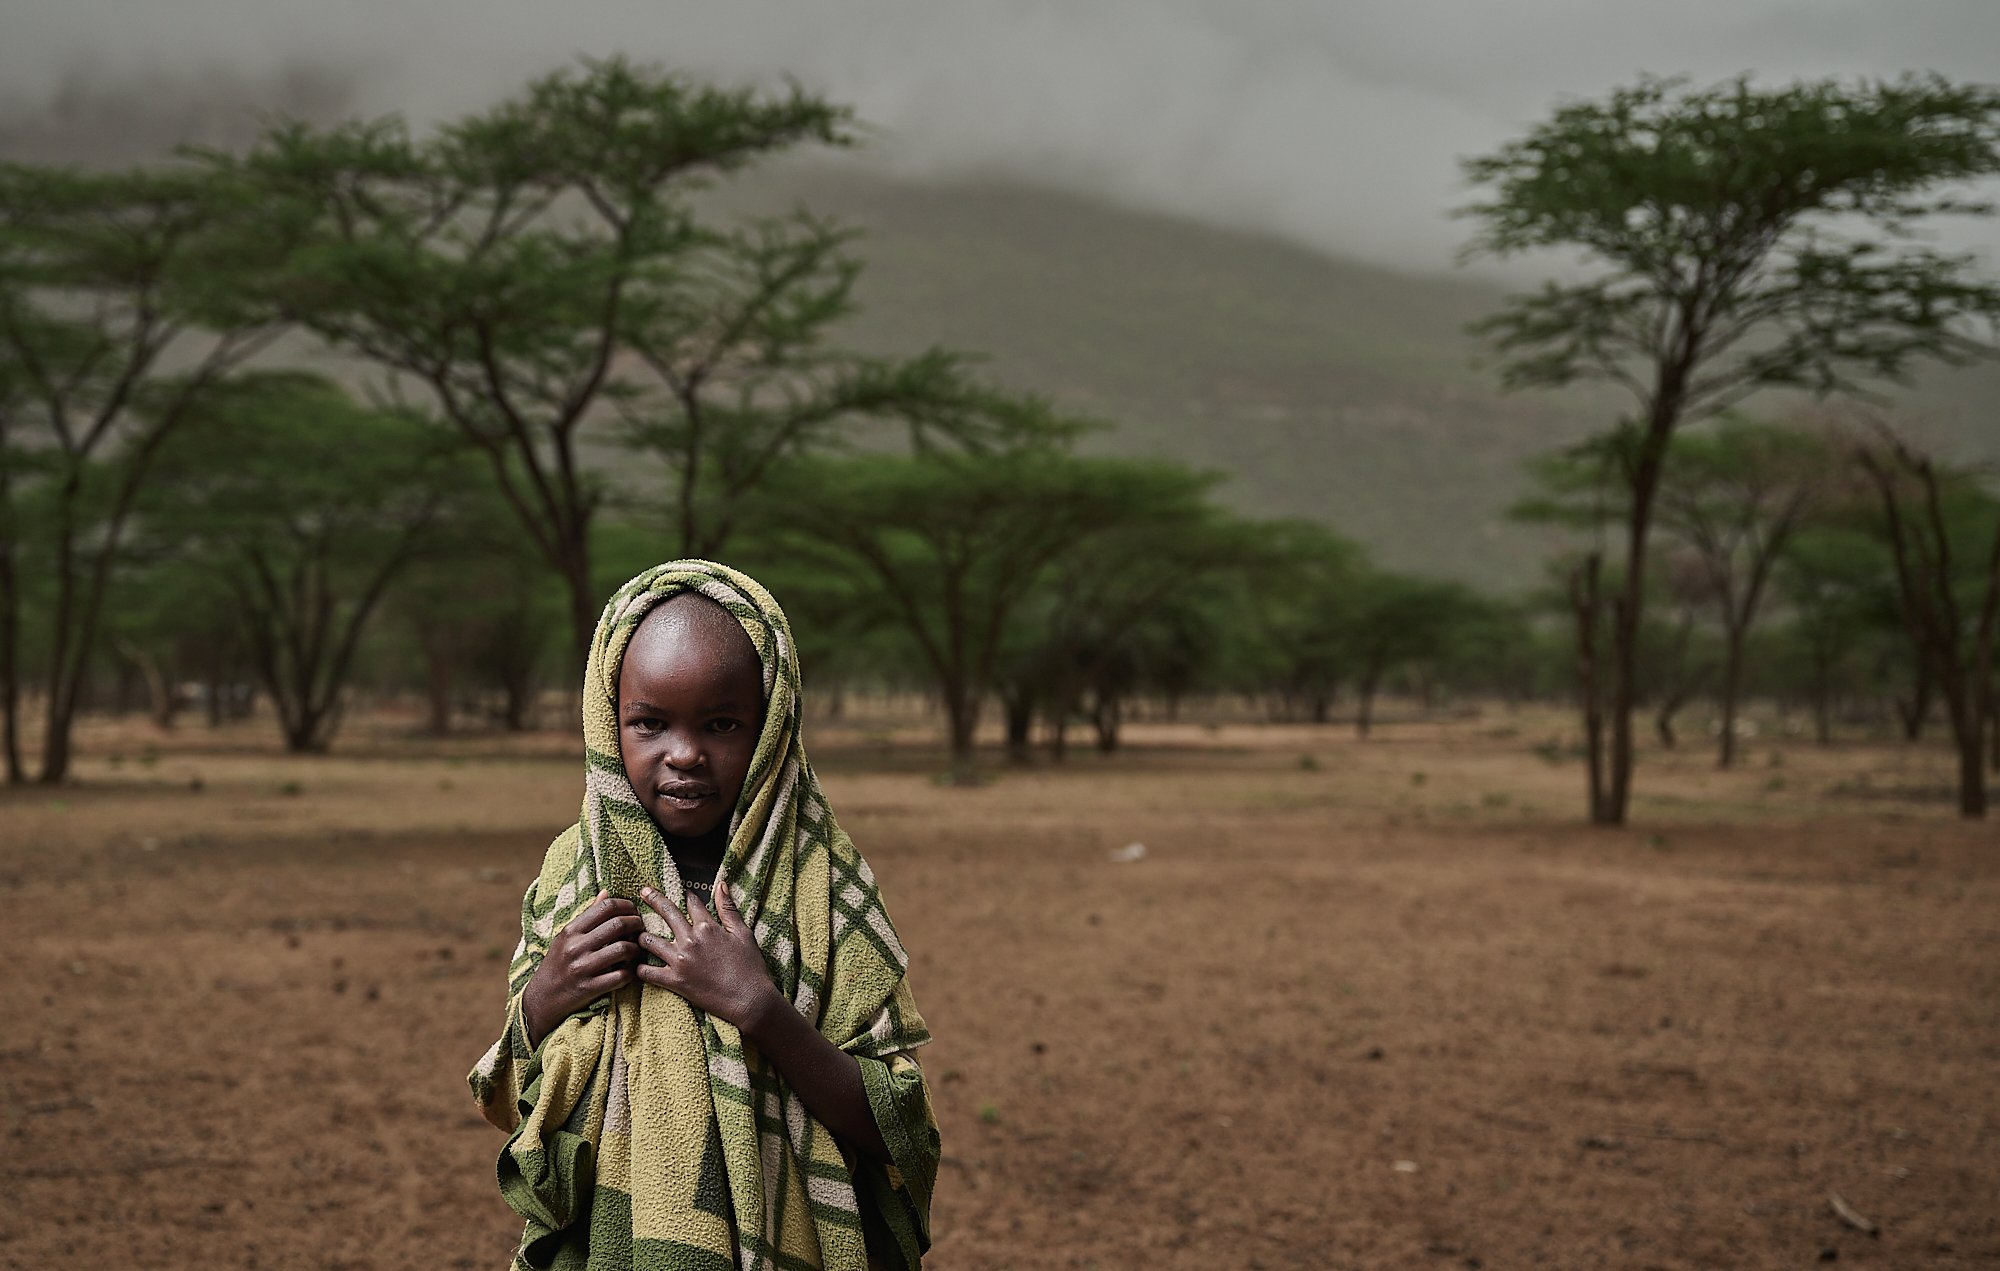 Young Samburu girl, village near Archer's Post